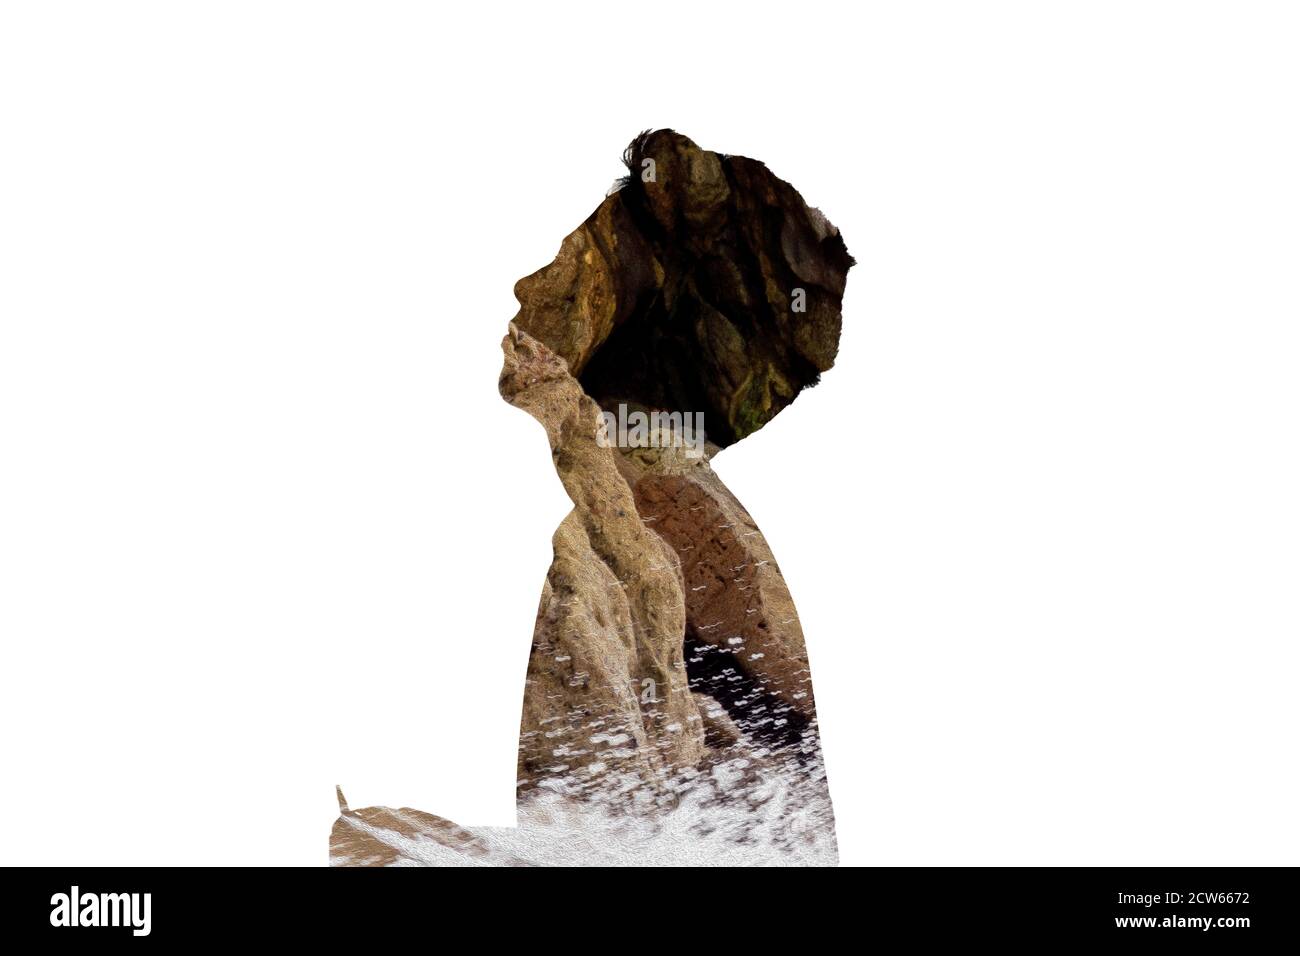 Composito digitale a esposizione multipla con una silhouette di una persona dal profilo e rocce e scogliere colorate. Foto Stock